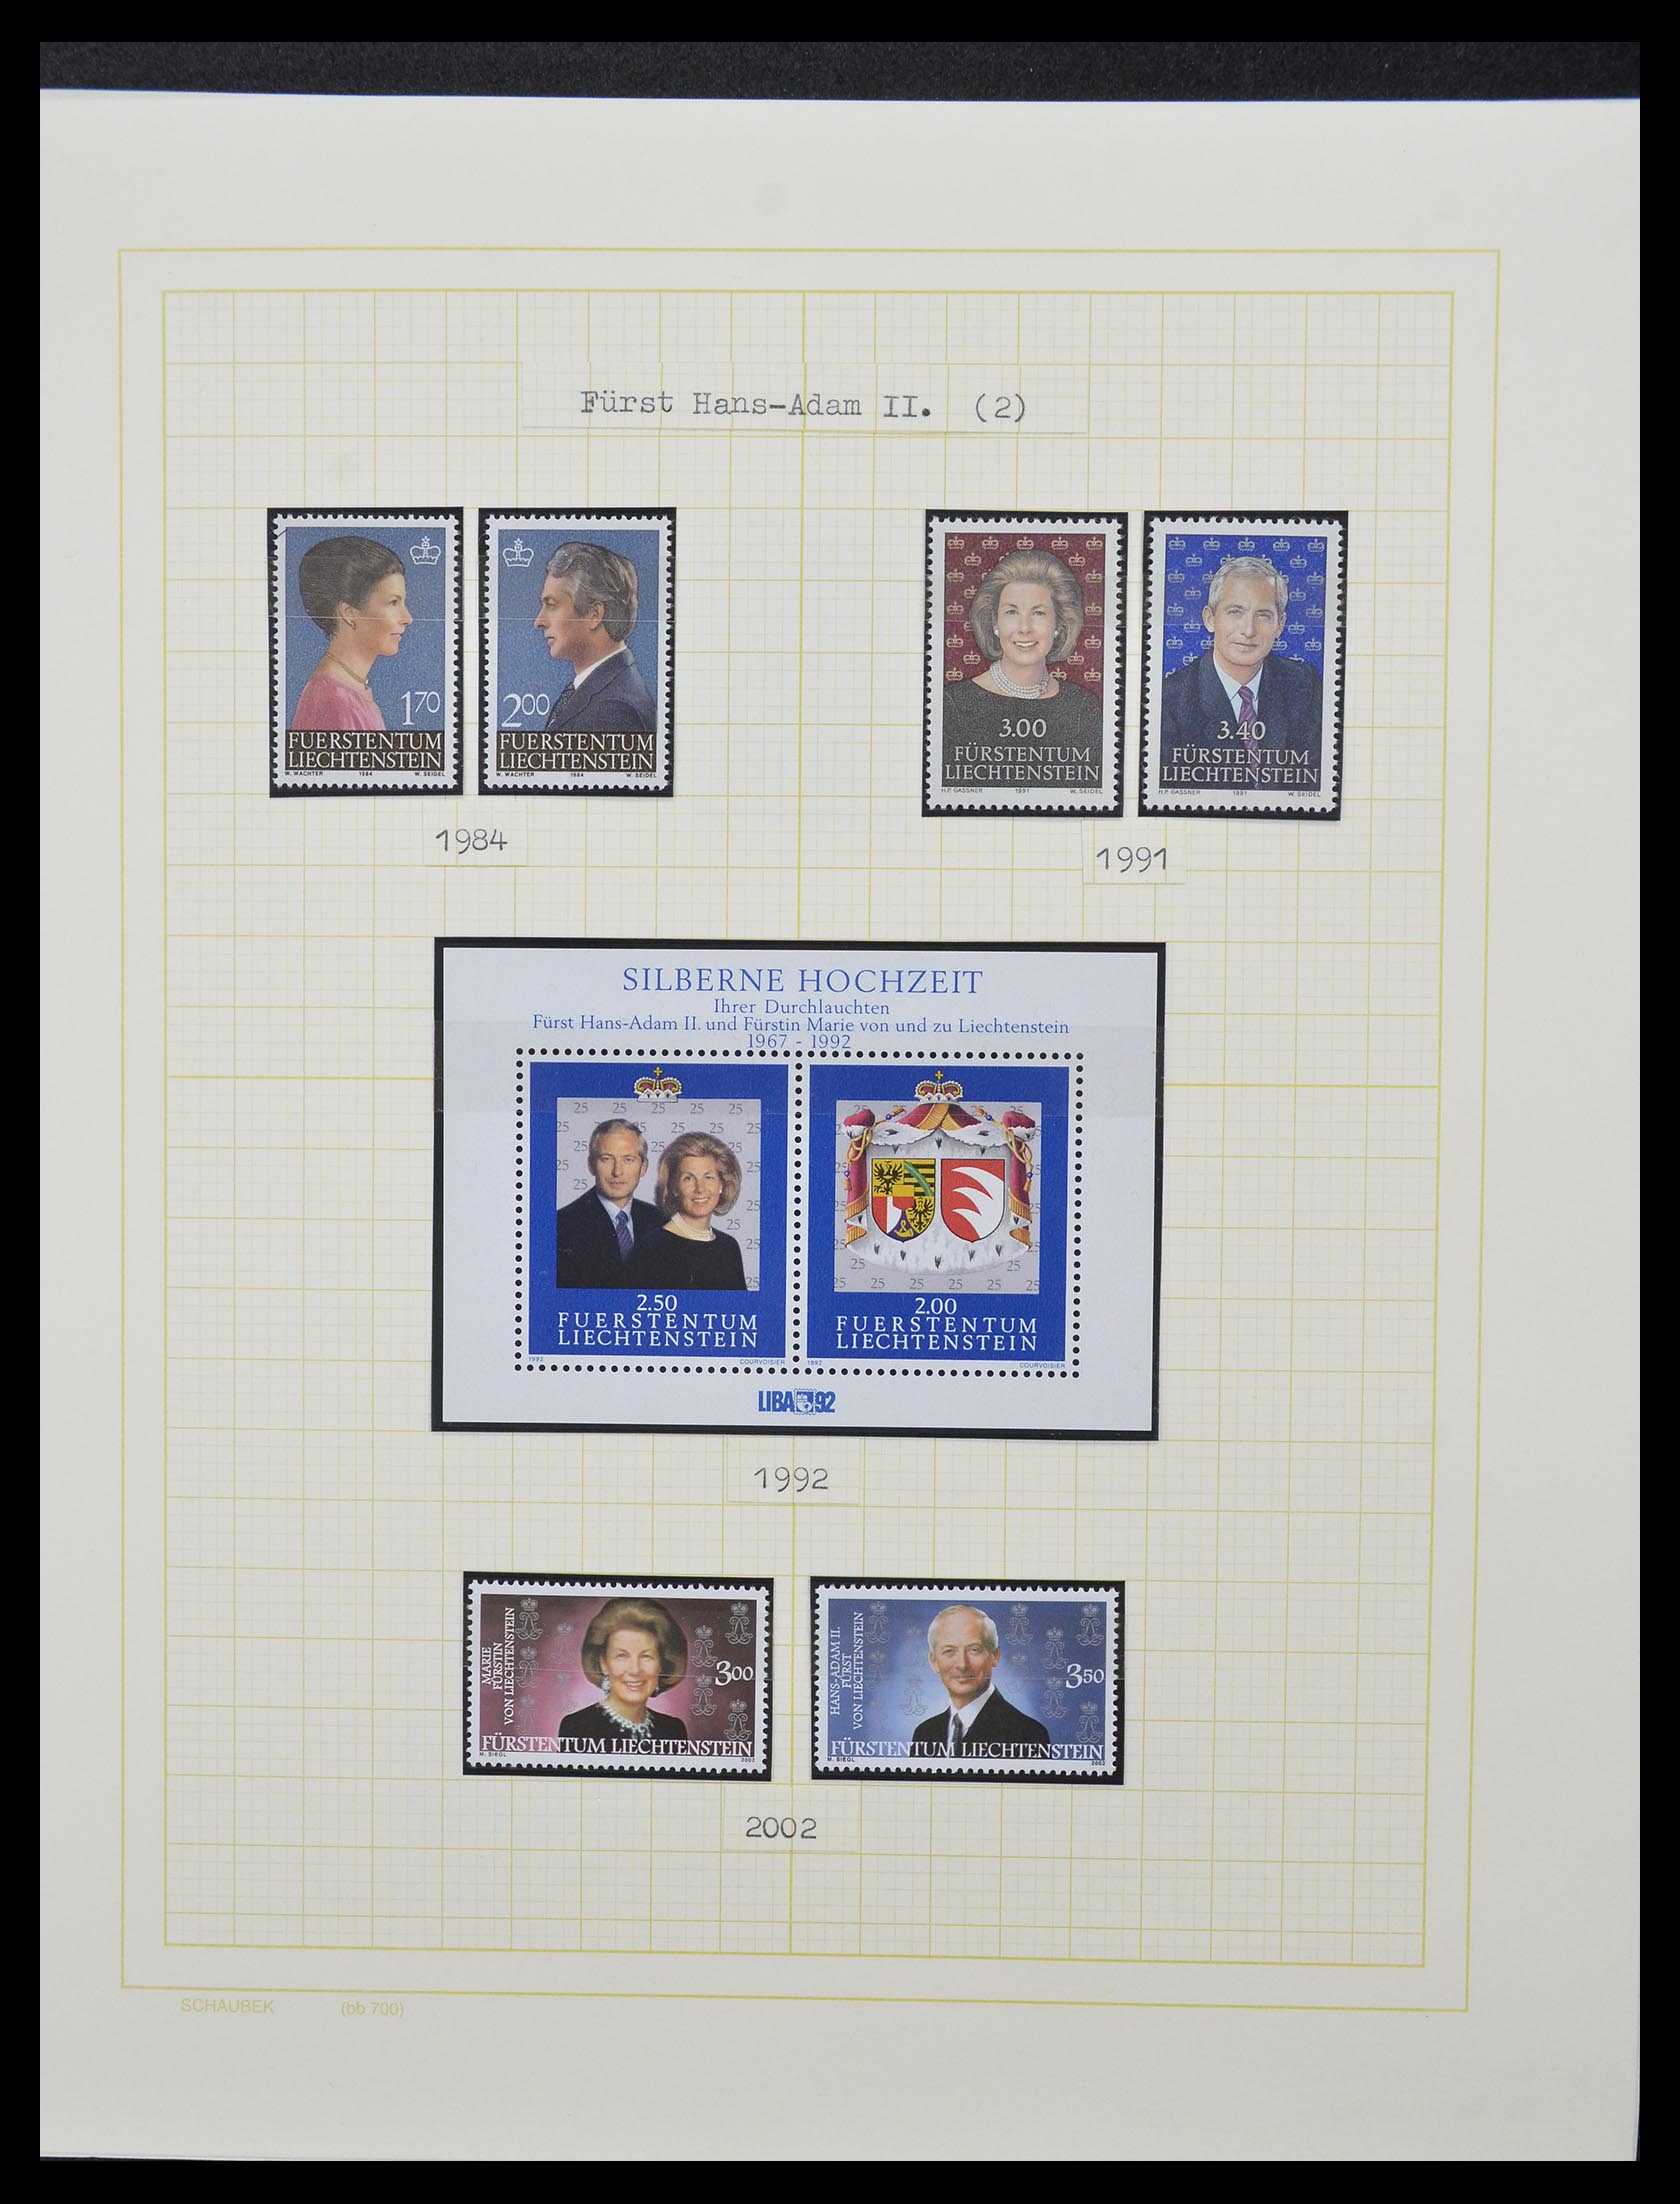 33138 022 - Stamp collection 33138 Liechtenstein 1912-2002.